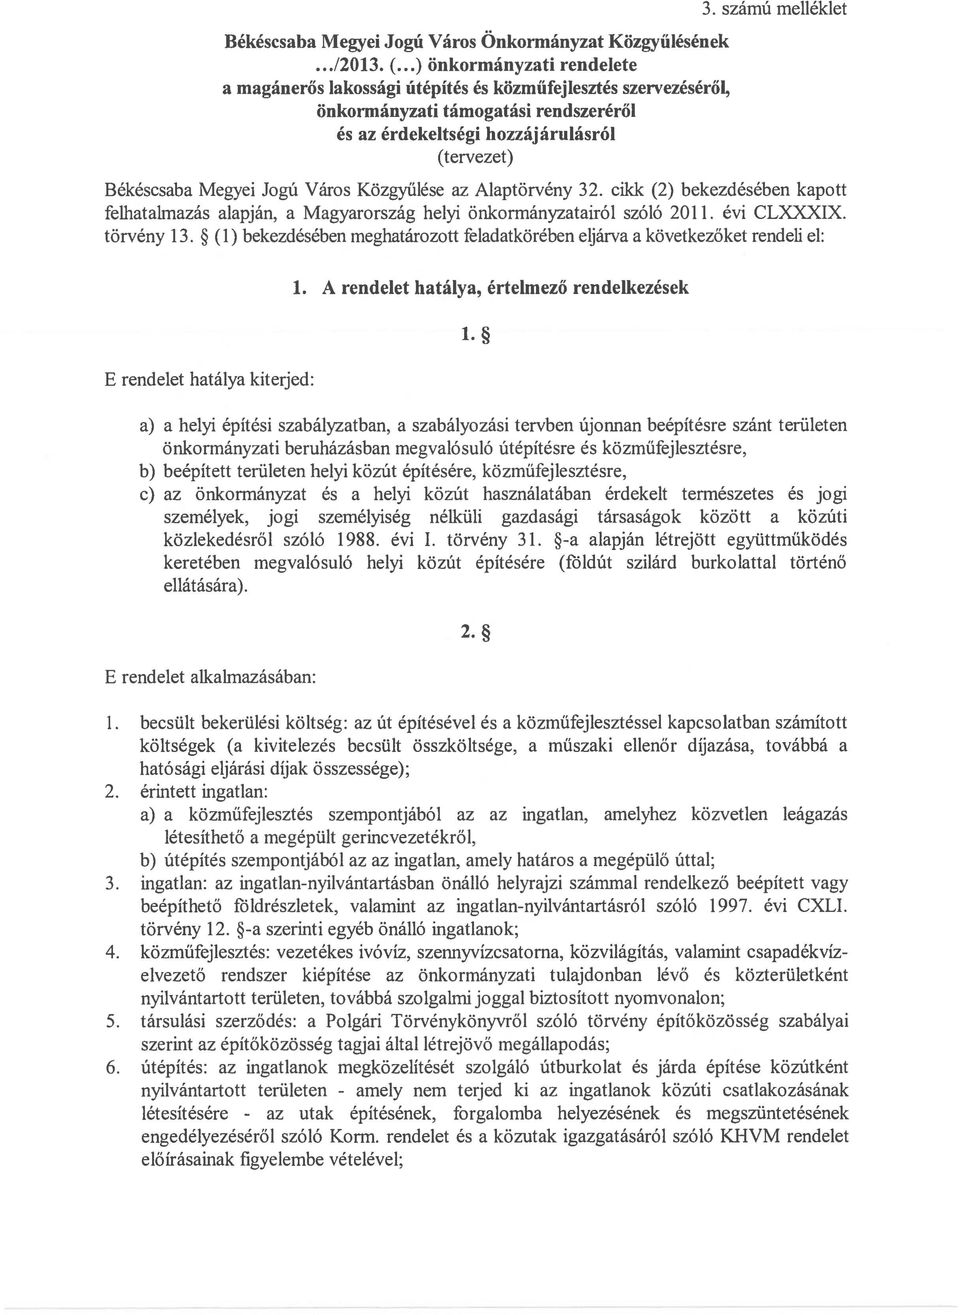 számú melléklet Békéscsaba Megyei Jogú Város Közgyűlése az Alaptörvény 32. cikk (2) bekezdésében kapott felliatalmazás alapján, a Magyarország helyi önkormányzatairól szóló 2011. évi CLXXXIX.